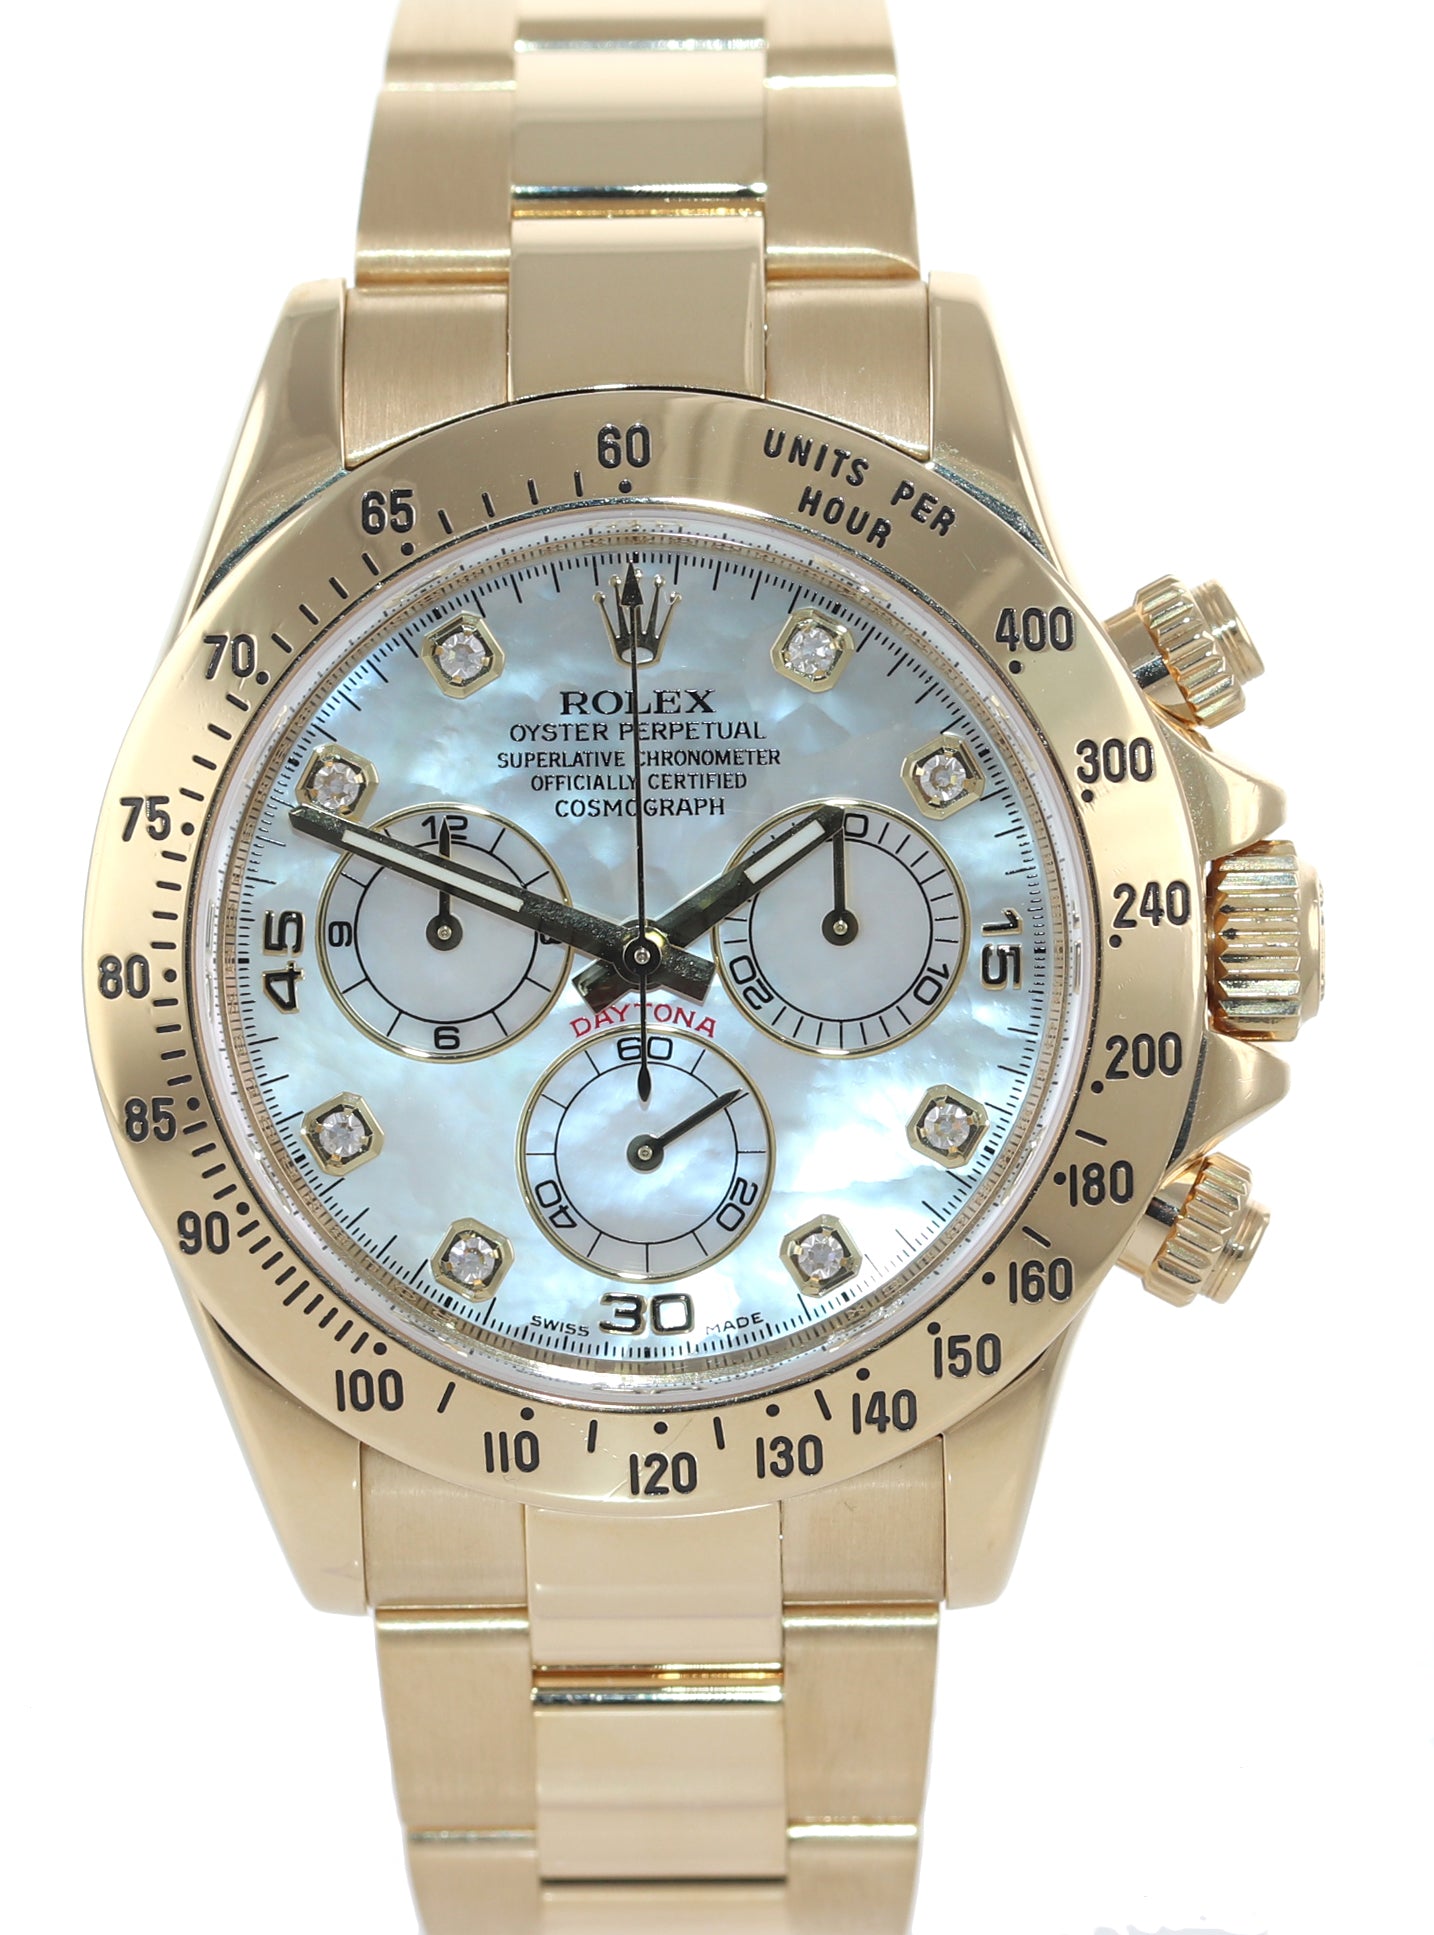 PAPERS Rolex Daytona 116528 MOP DIAMOND 18K Yellow Gold 40mm Watch Box